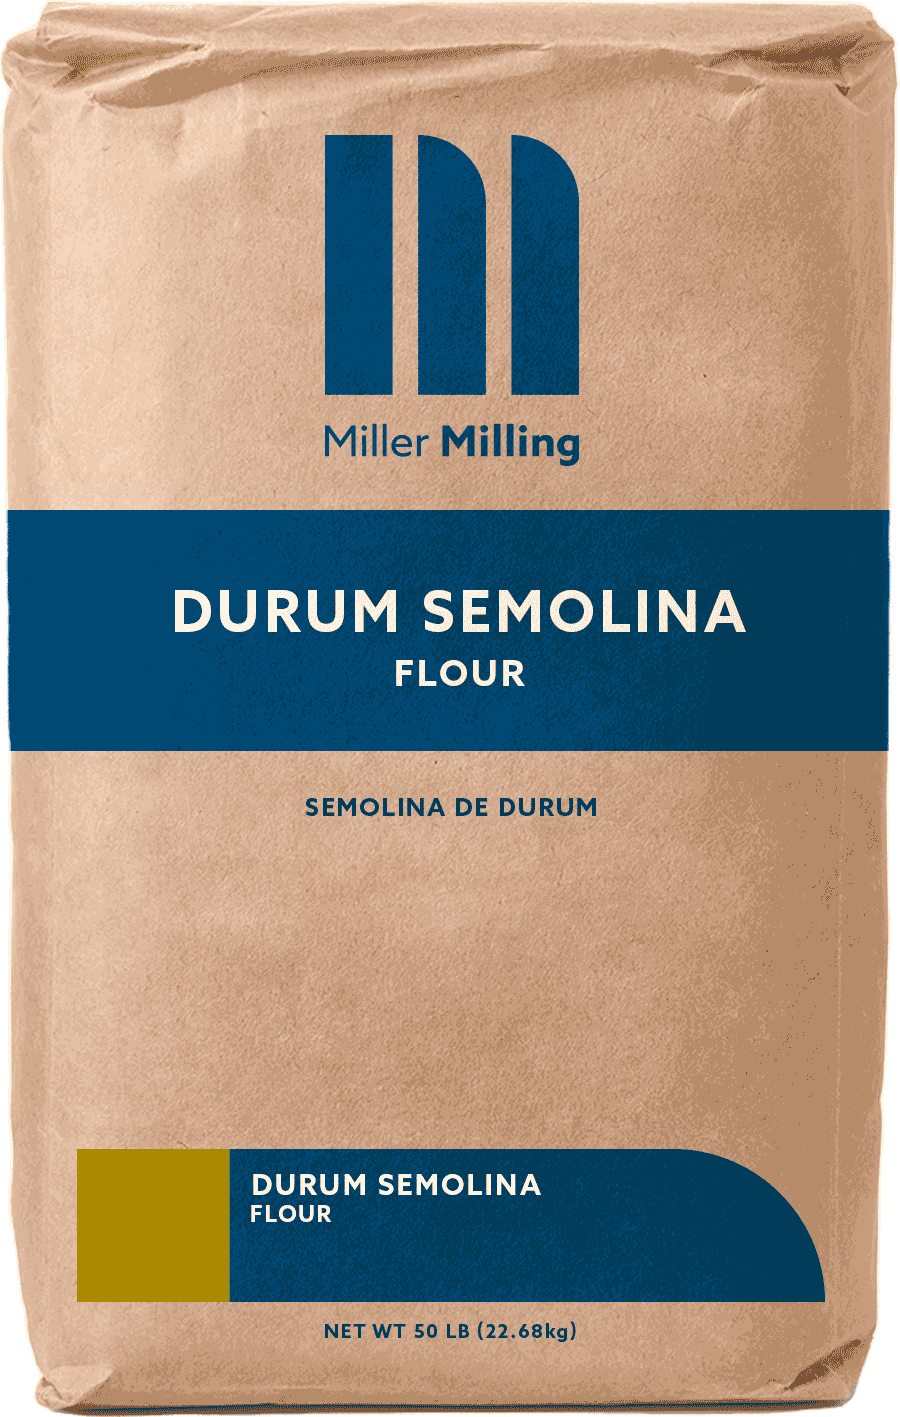 Durum Semolina flour